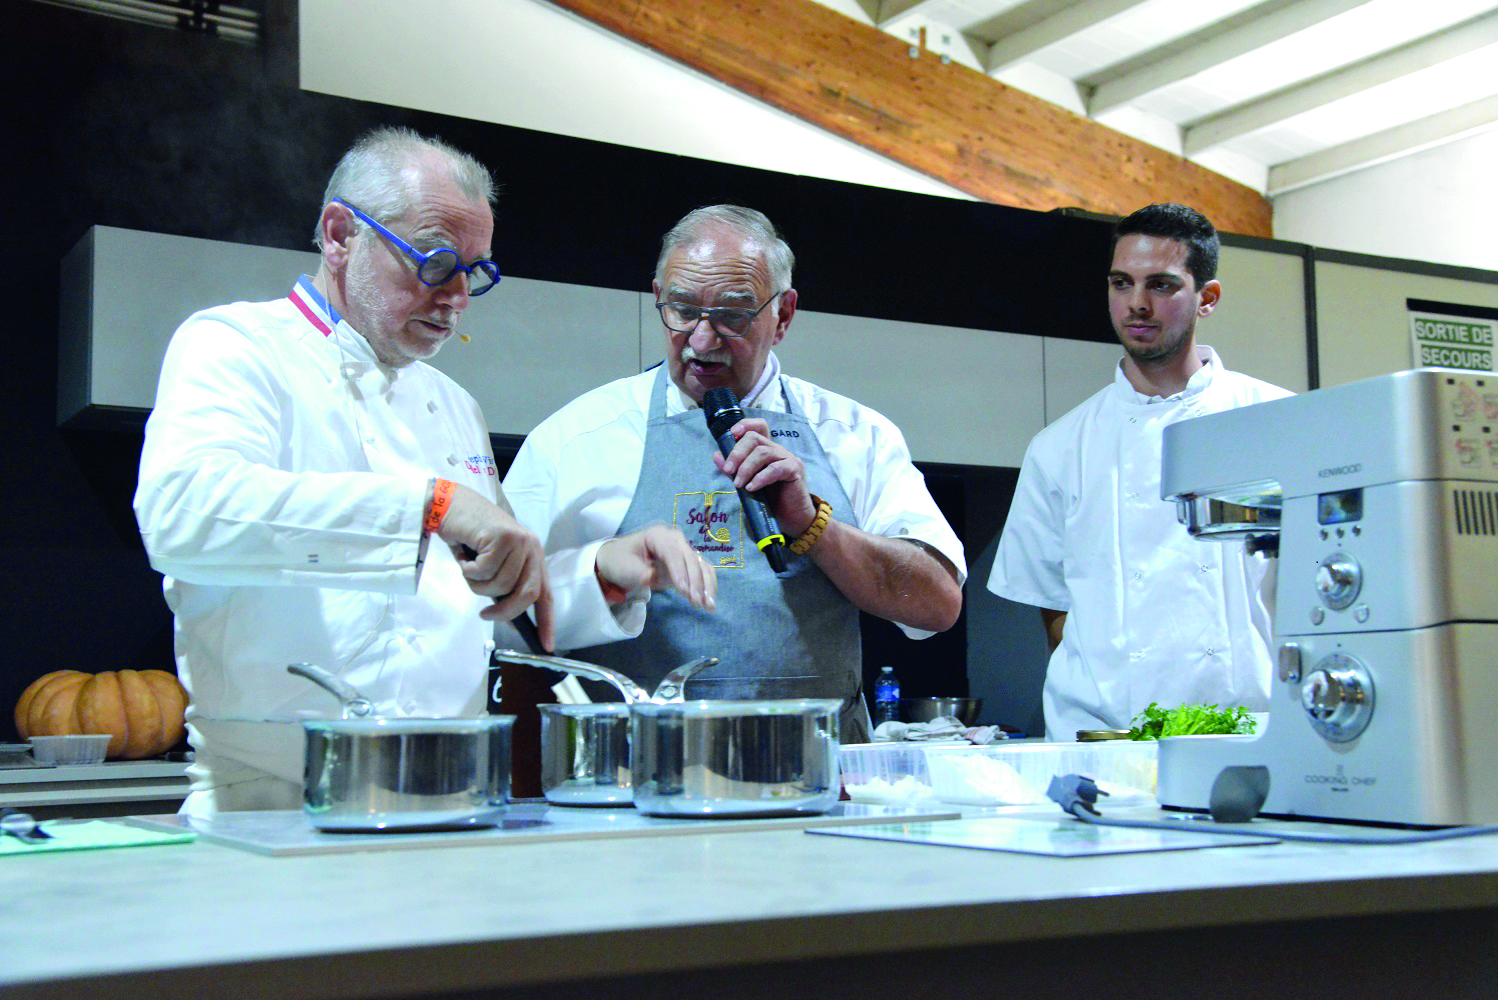 Démonstration culinaire avec les chefs et Gérard Michel au micro.